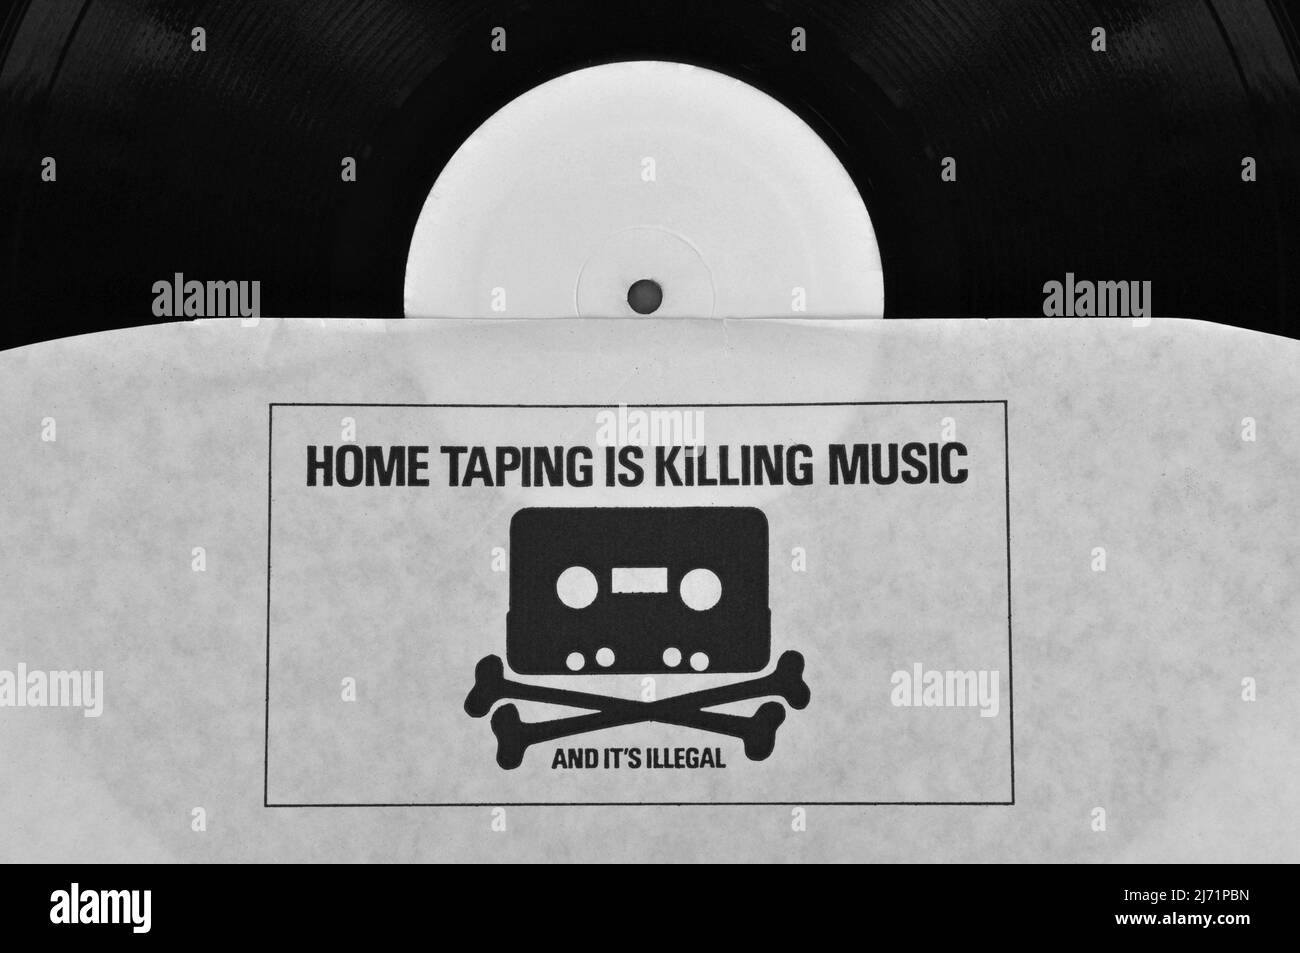 Athen, Griechenland - 1. August 2014: Home-Taping tötet Musik und es ist eine illegale Anti-Urheberrechtsverletzung-Kampagne von 1980s, die auf Vinyl-Schallplatten gedruckt wird Stockfoto